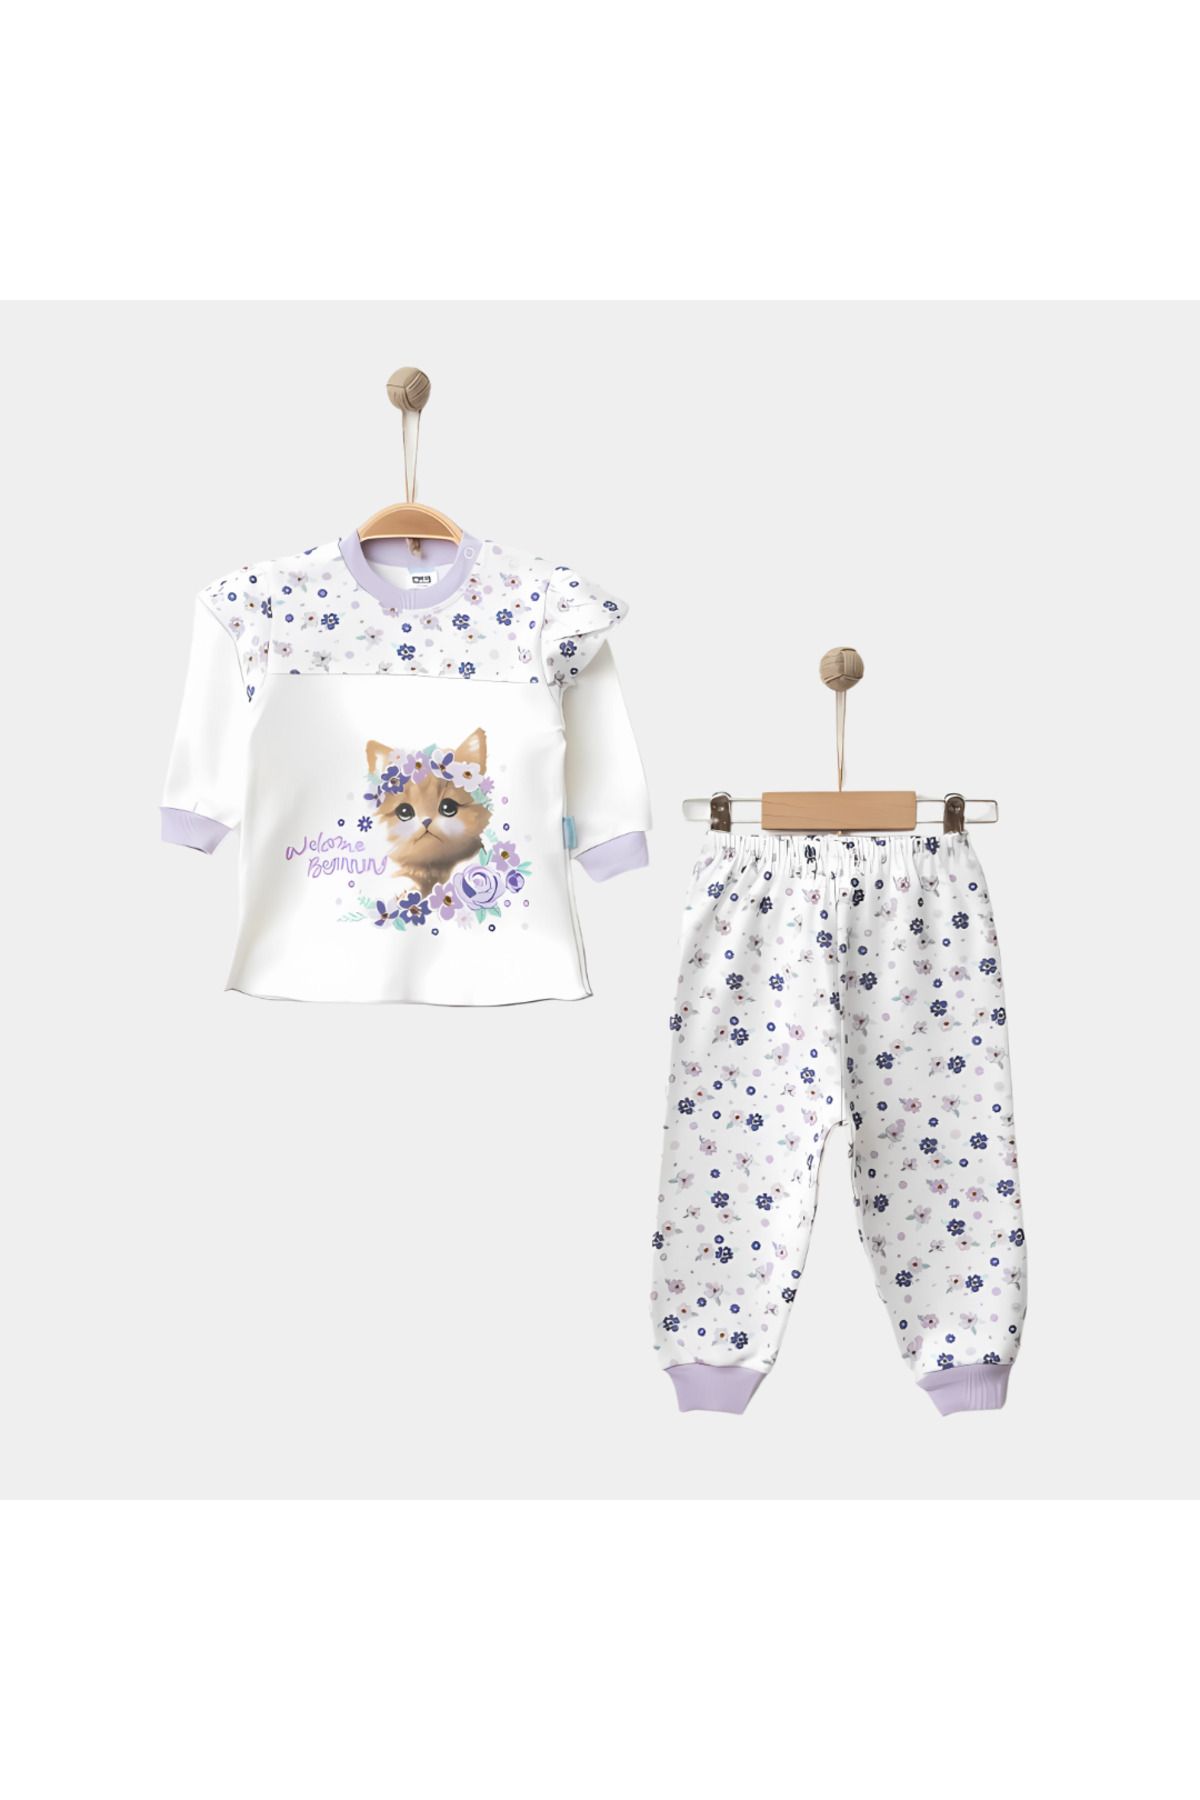 Rise Raba Kız Bebek Takım Pamuklu Kedi Baskılı Çiçekli 2'li Pijama Takımı 9-18 Aylık